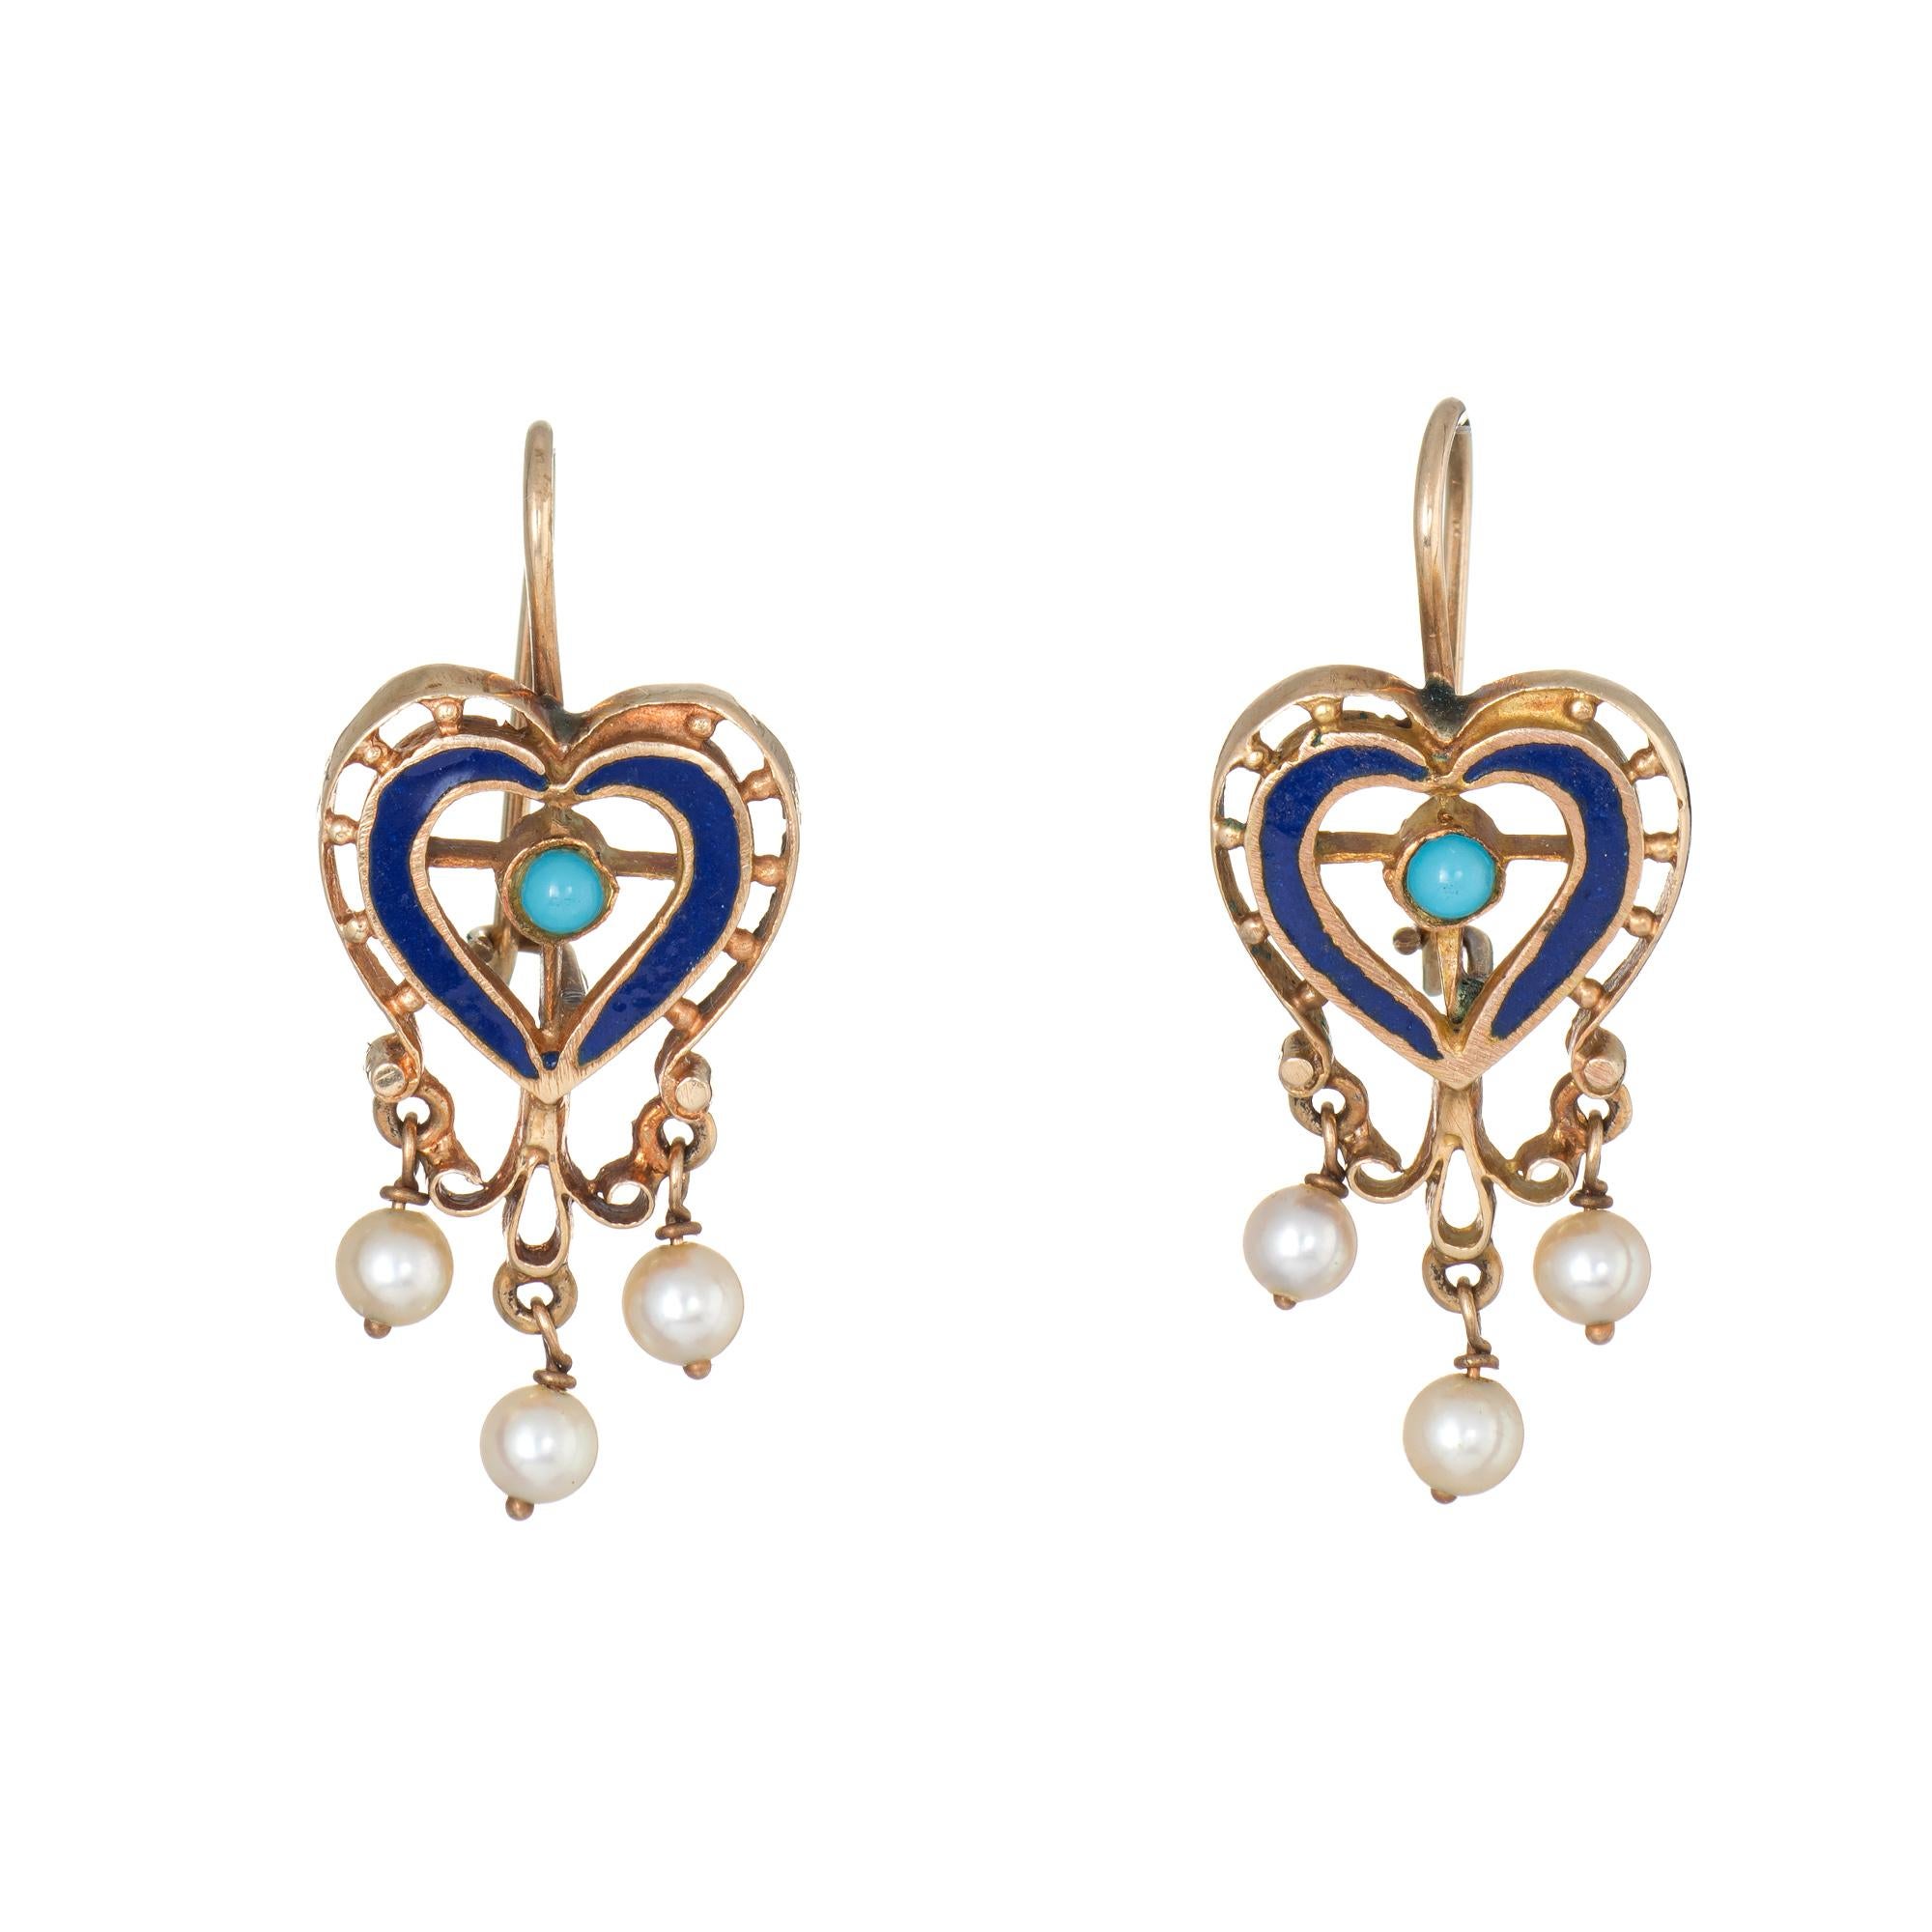 Cabochon Vintage Heart Earrings 18 Karat Gold Turquoise Pearl Enamel Estate Jewelry